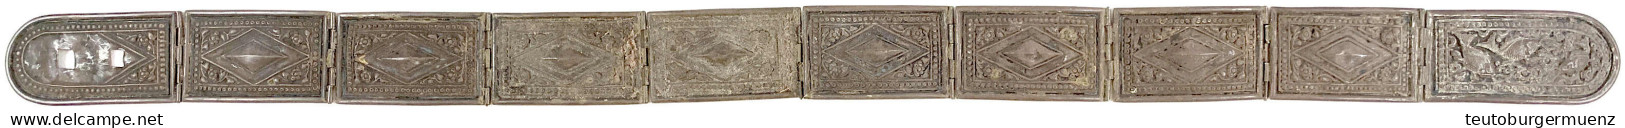 Silbergürtel Um 1900 Mit Fisch- Und Rauten-Ornamentik. Gürtelbreite 4,1 Cm, Gesamtlänge 71 Cm. 184,77 G. Aus Kuching. Se - Malaysia